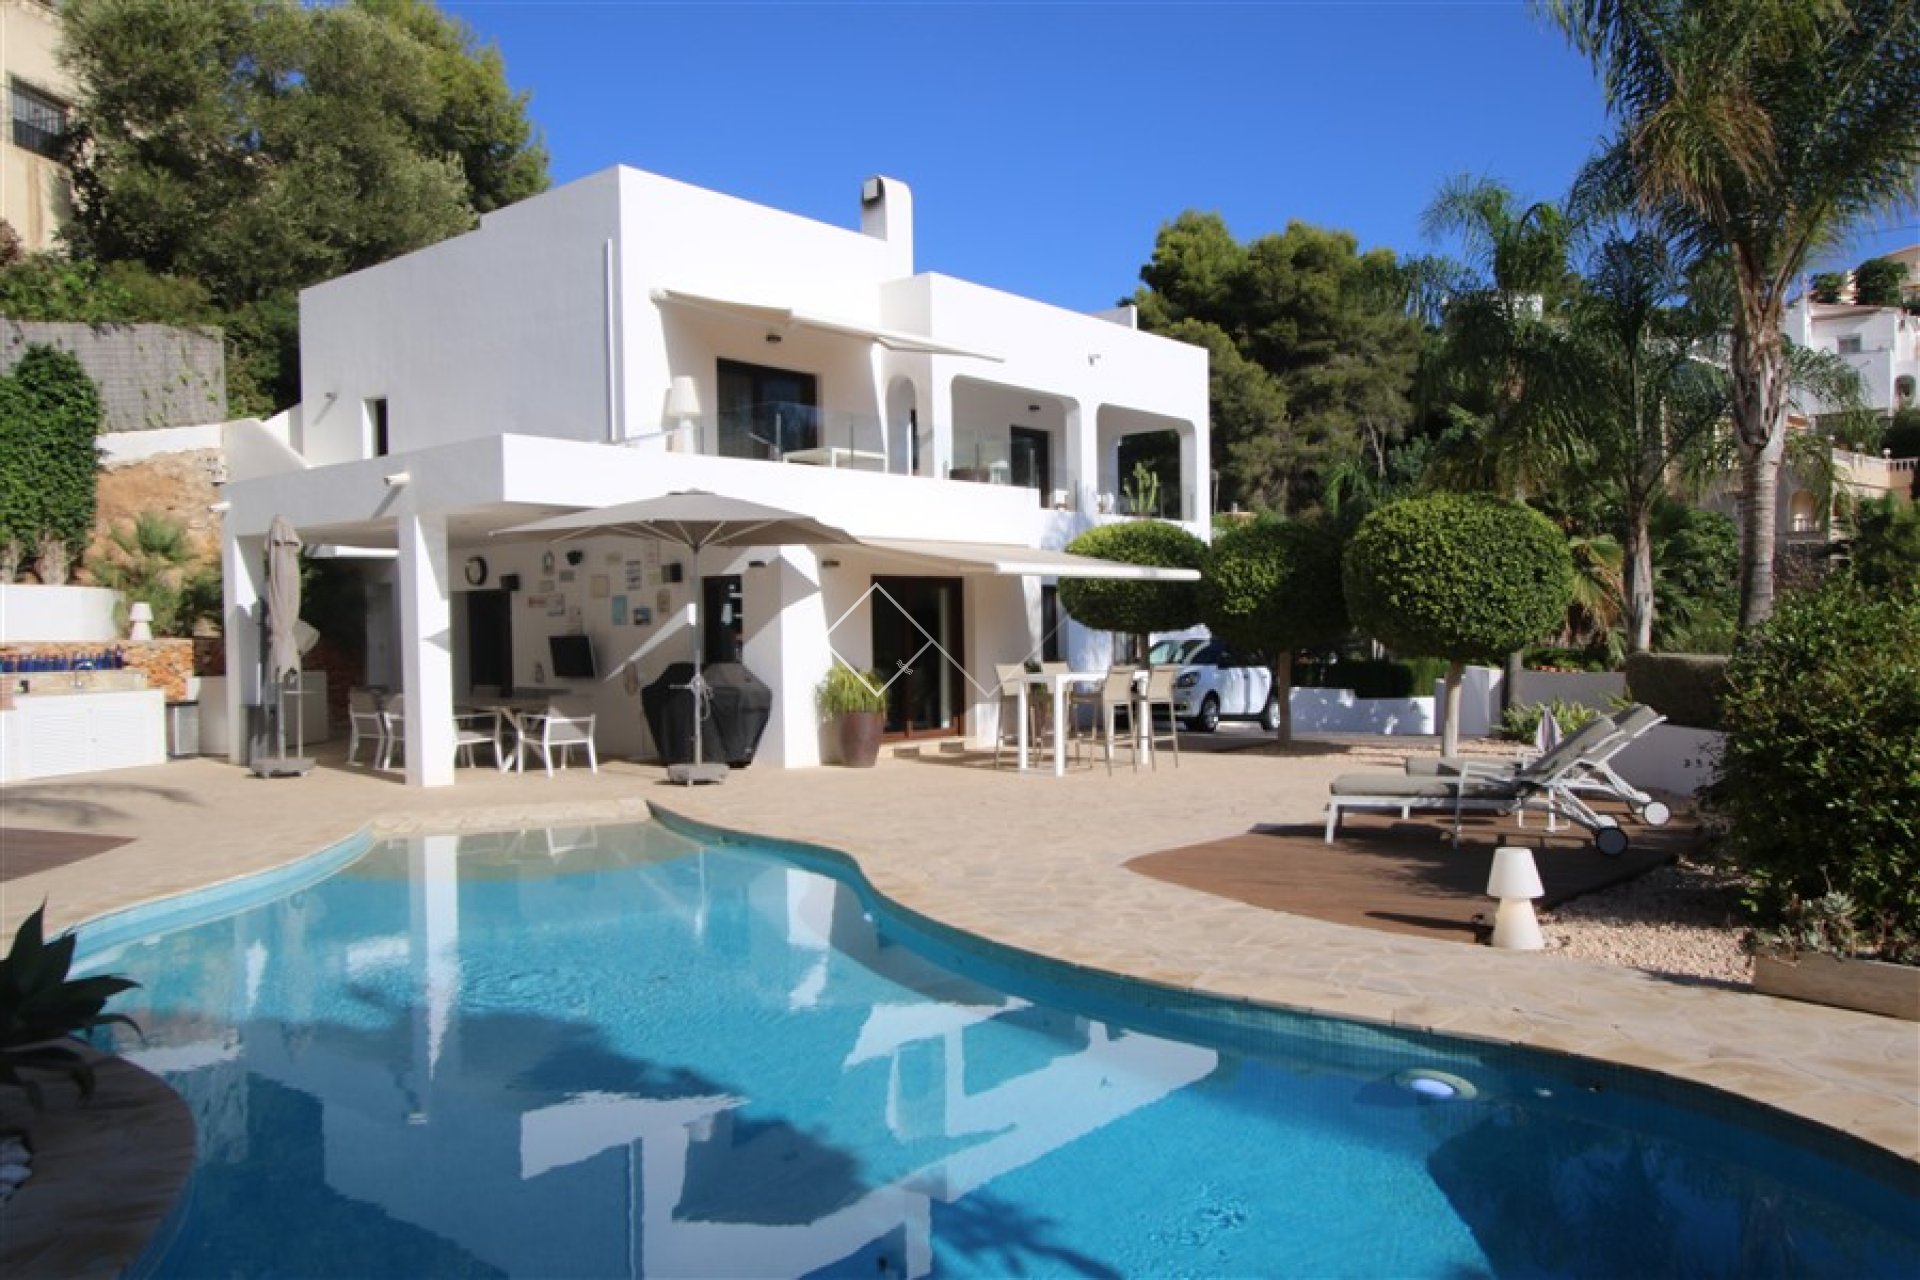 Ibiza villa en venta en Benissa con piscina climatizada